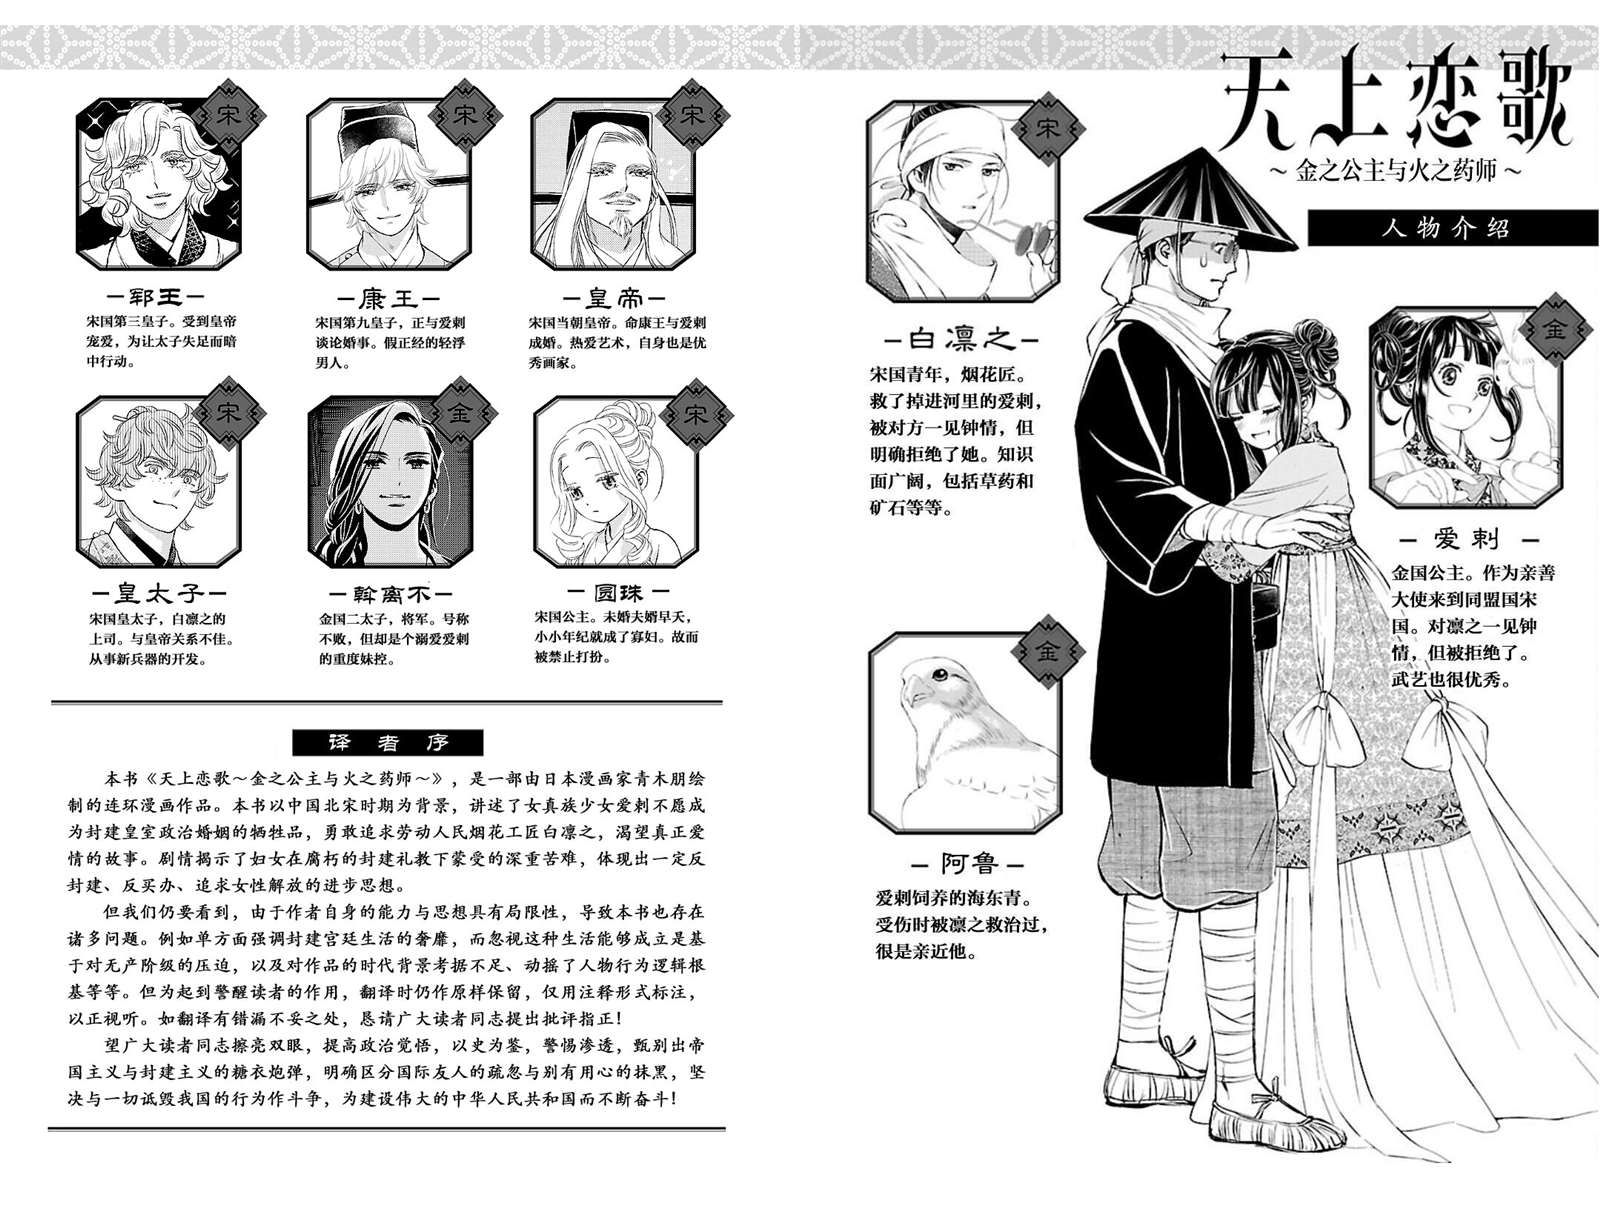 天上恋歌~金之公主与火之药师~漫画,第17话3图